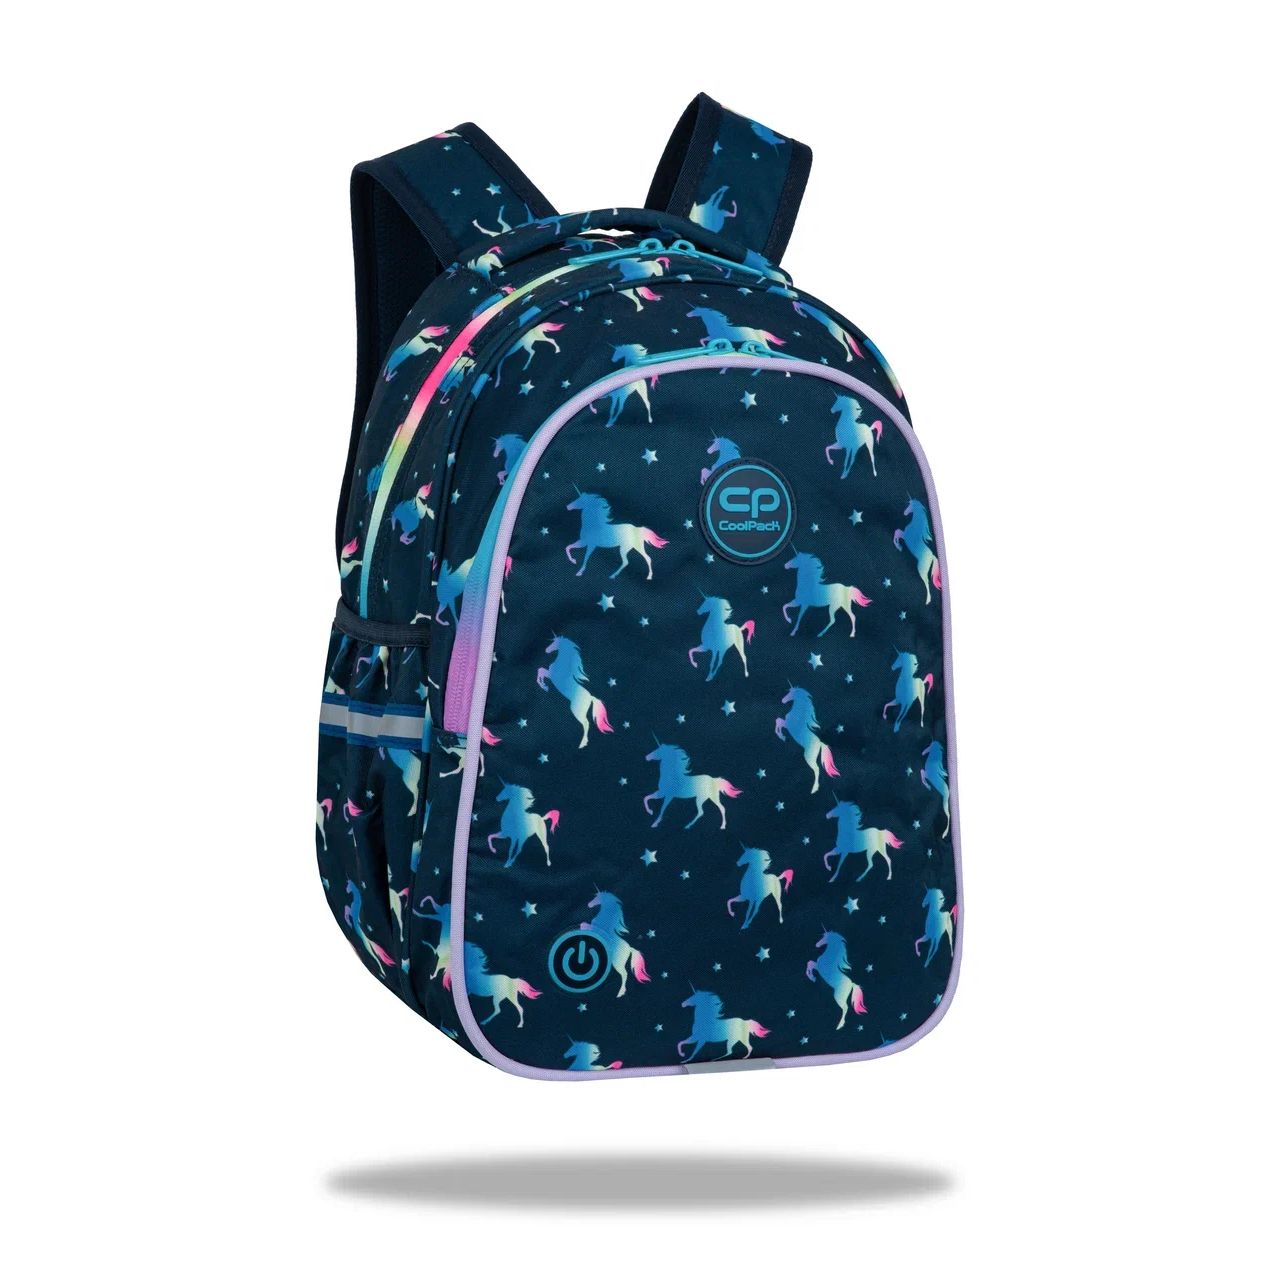 Рюкзак школьный Сool Pack LED, 39х28х17 см, 2 отделения, светодиодная подсветка рюкзак школьный сool pack joy 15” chocolove 39х28х17 см 21 л 3 отделения